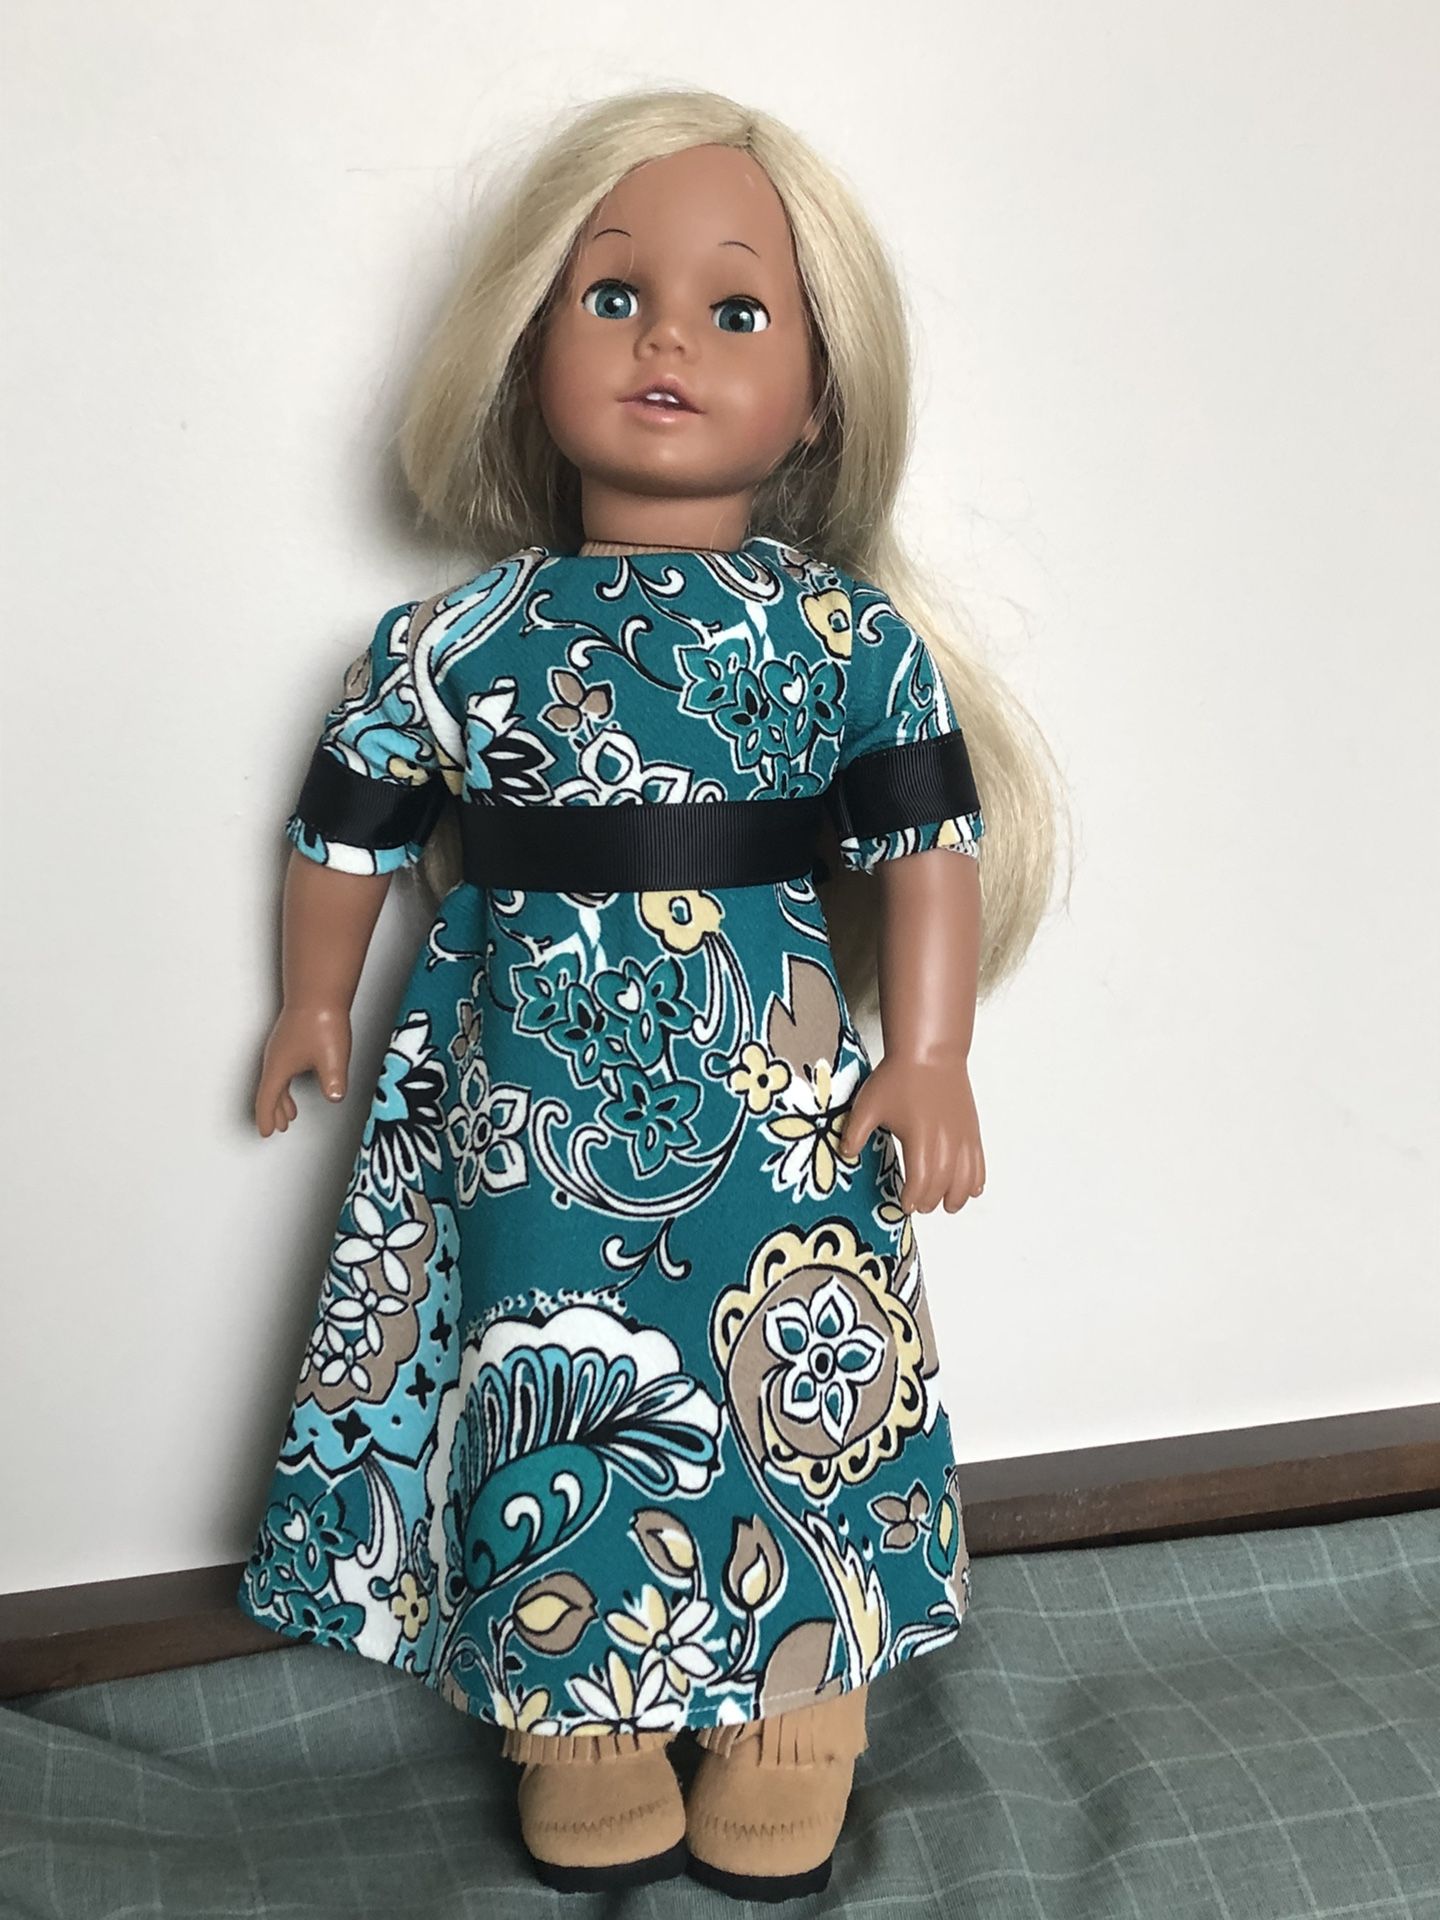 New handmade homemade 18” modest full length doll dress